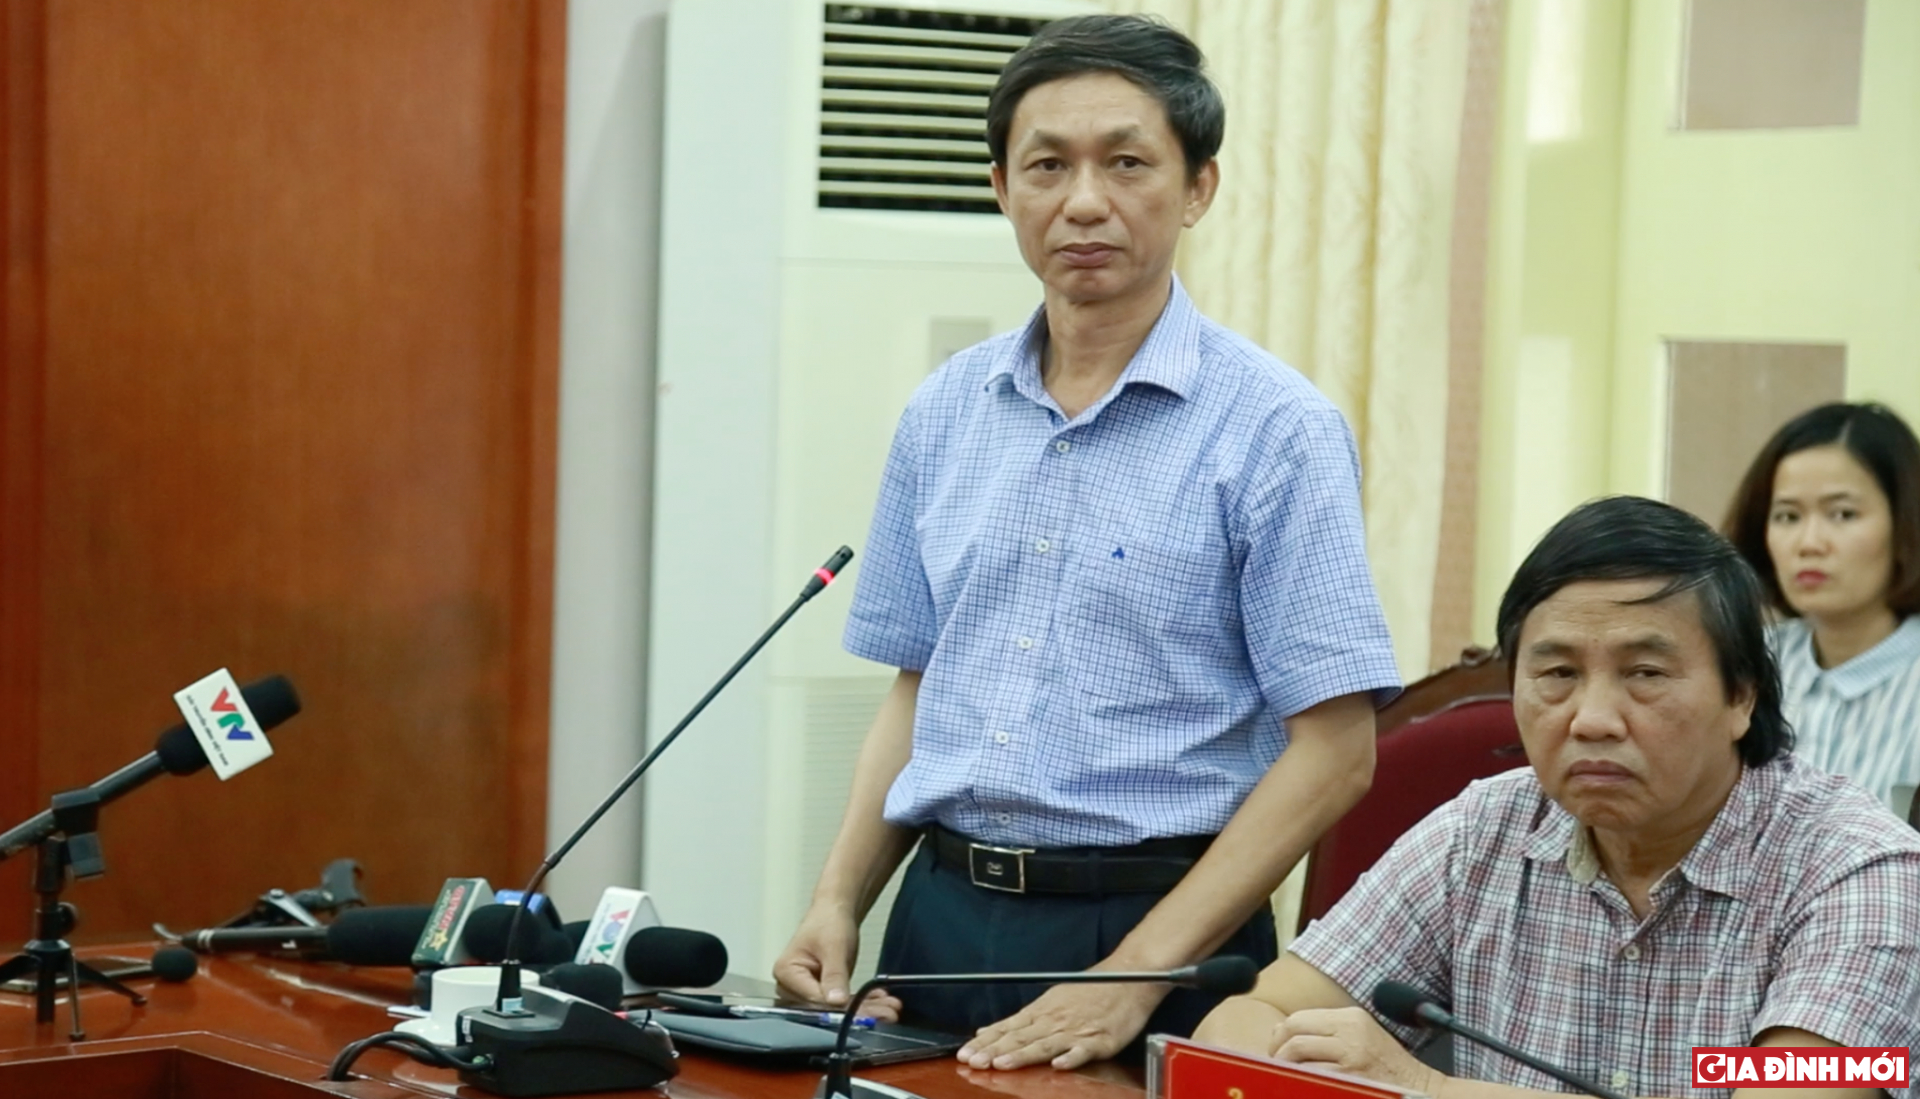 Ông Nguyễn Hoàng Long - Cục trưởng Cục phòng chống HIV - AIDS, Bộ Y tế